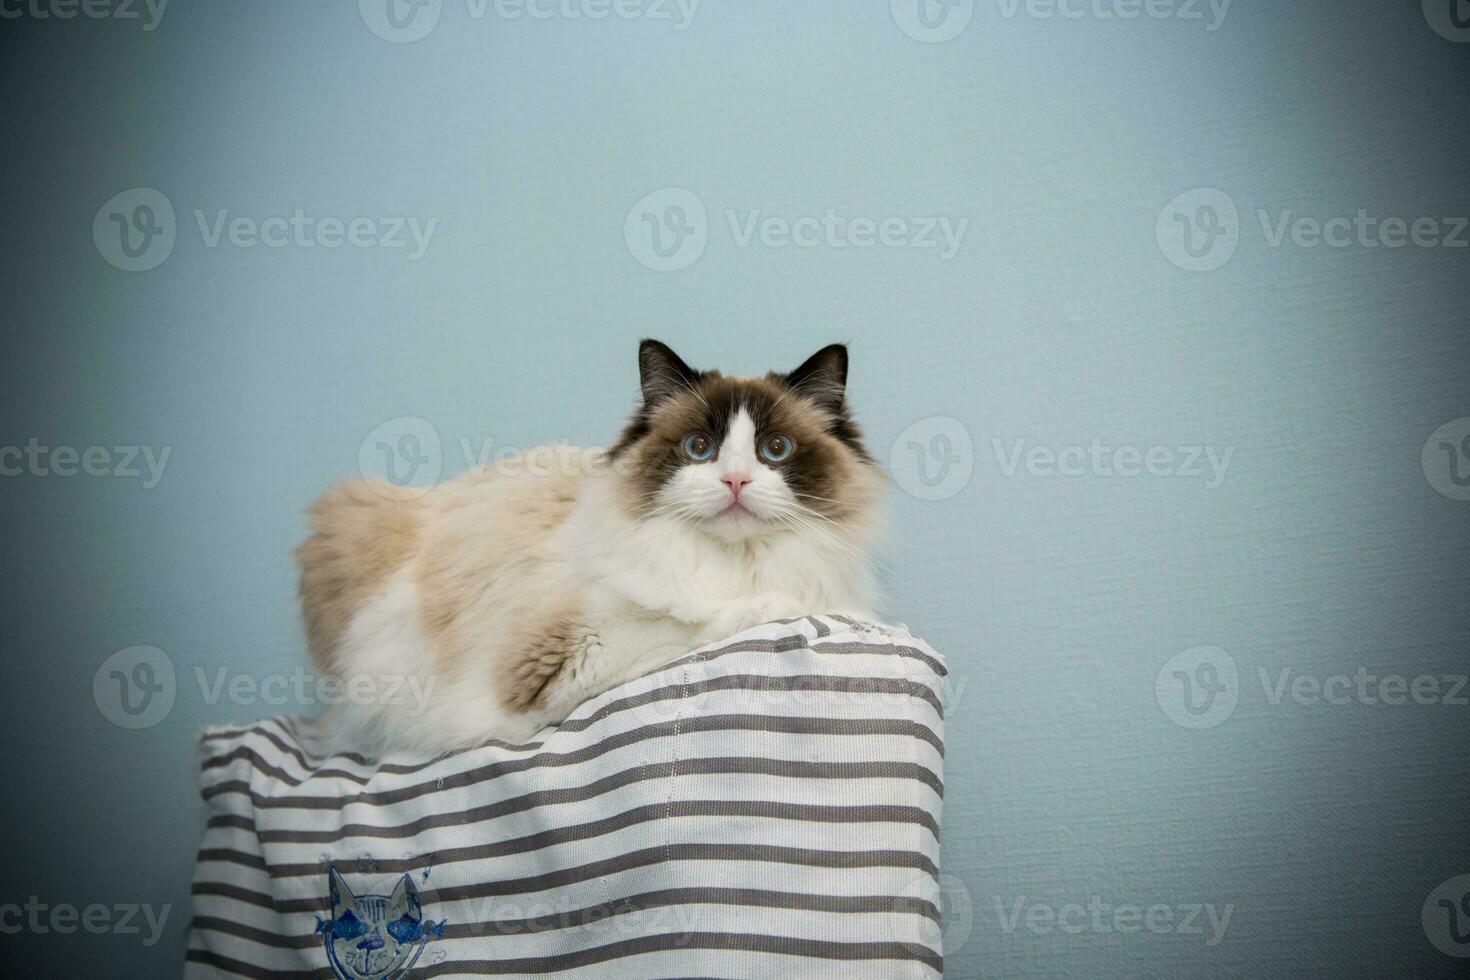 jung schön reinrassig Ragdoll Katze beim Zuhause foto